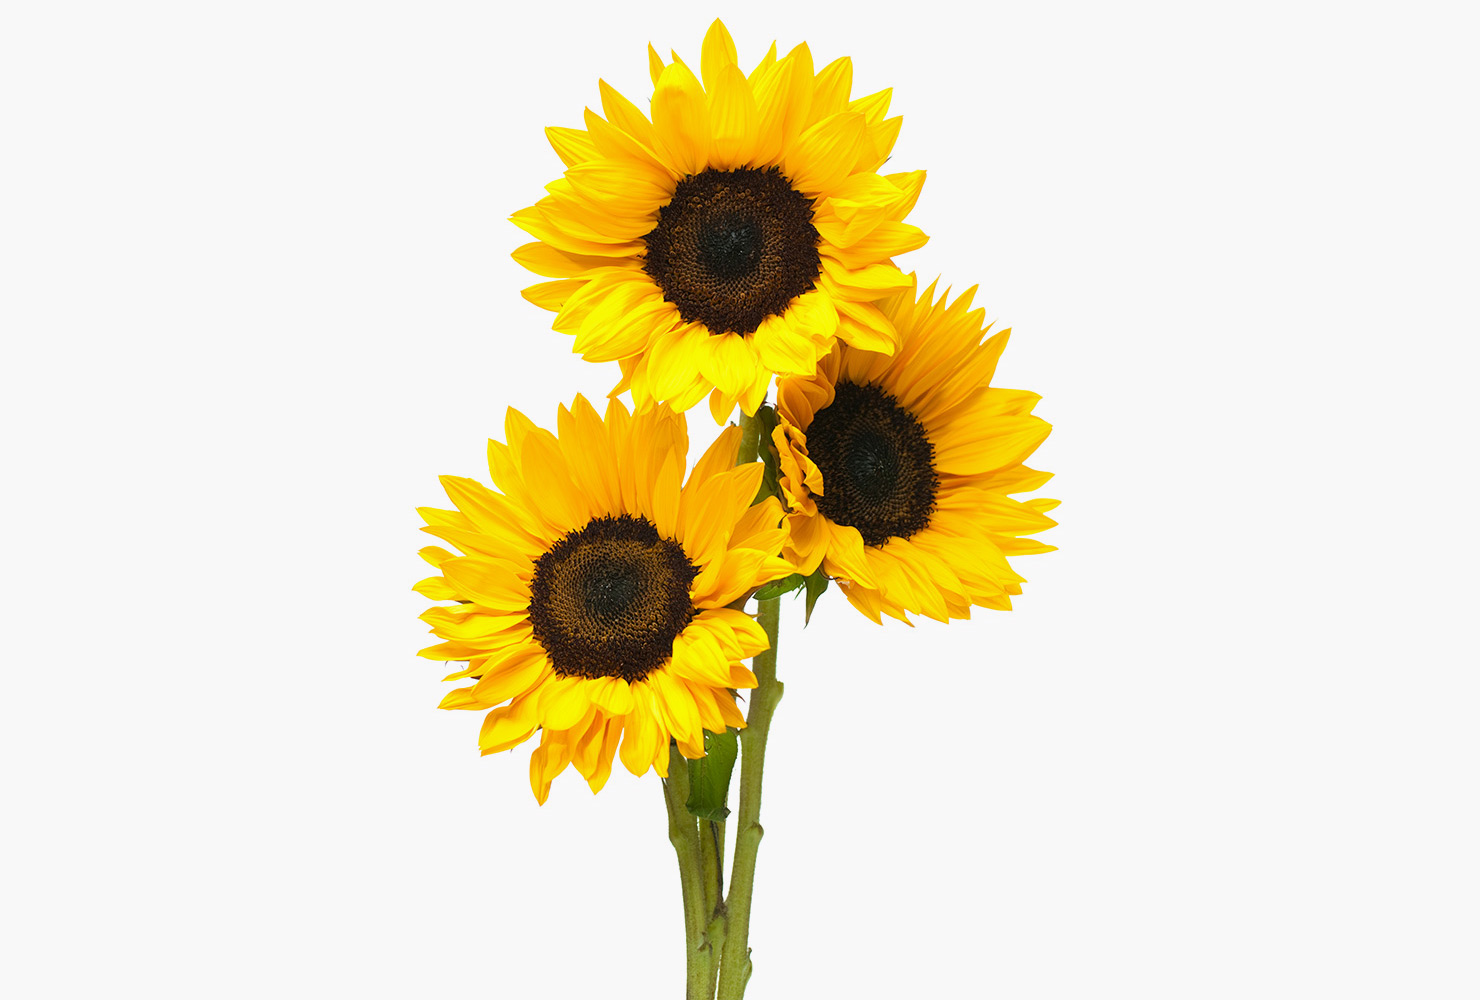 Three yellow sunflowers. 